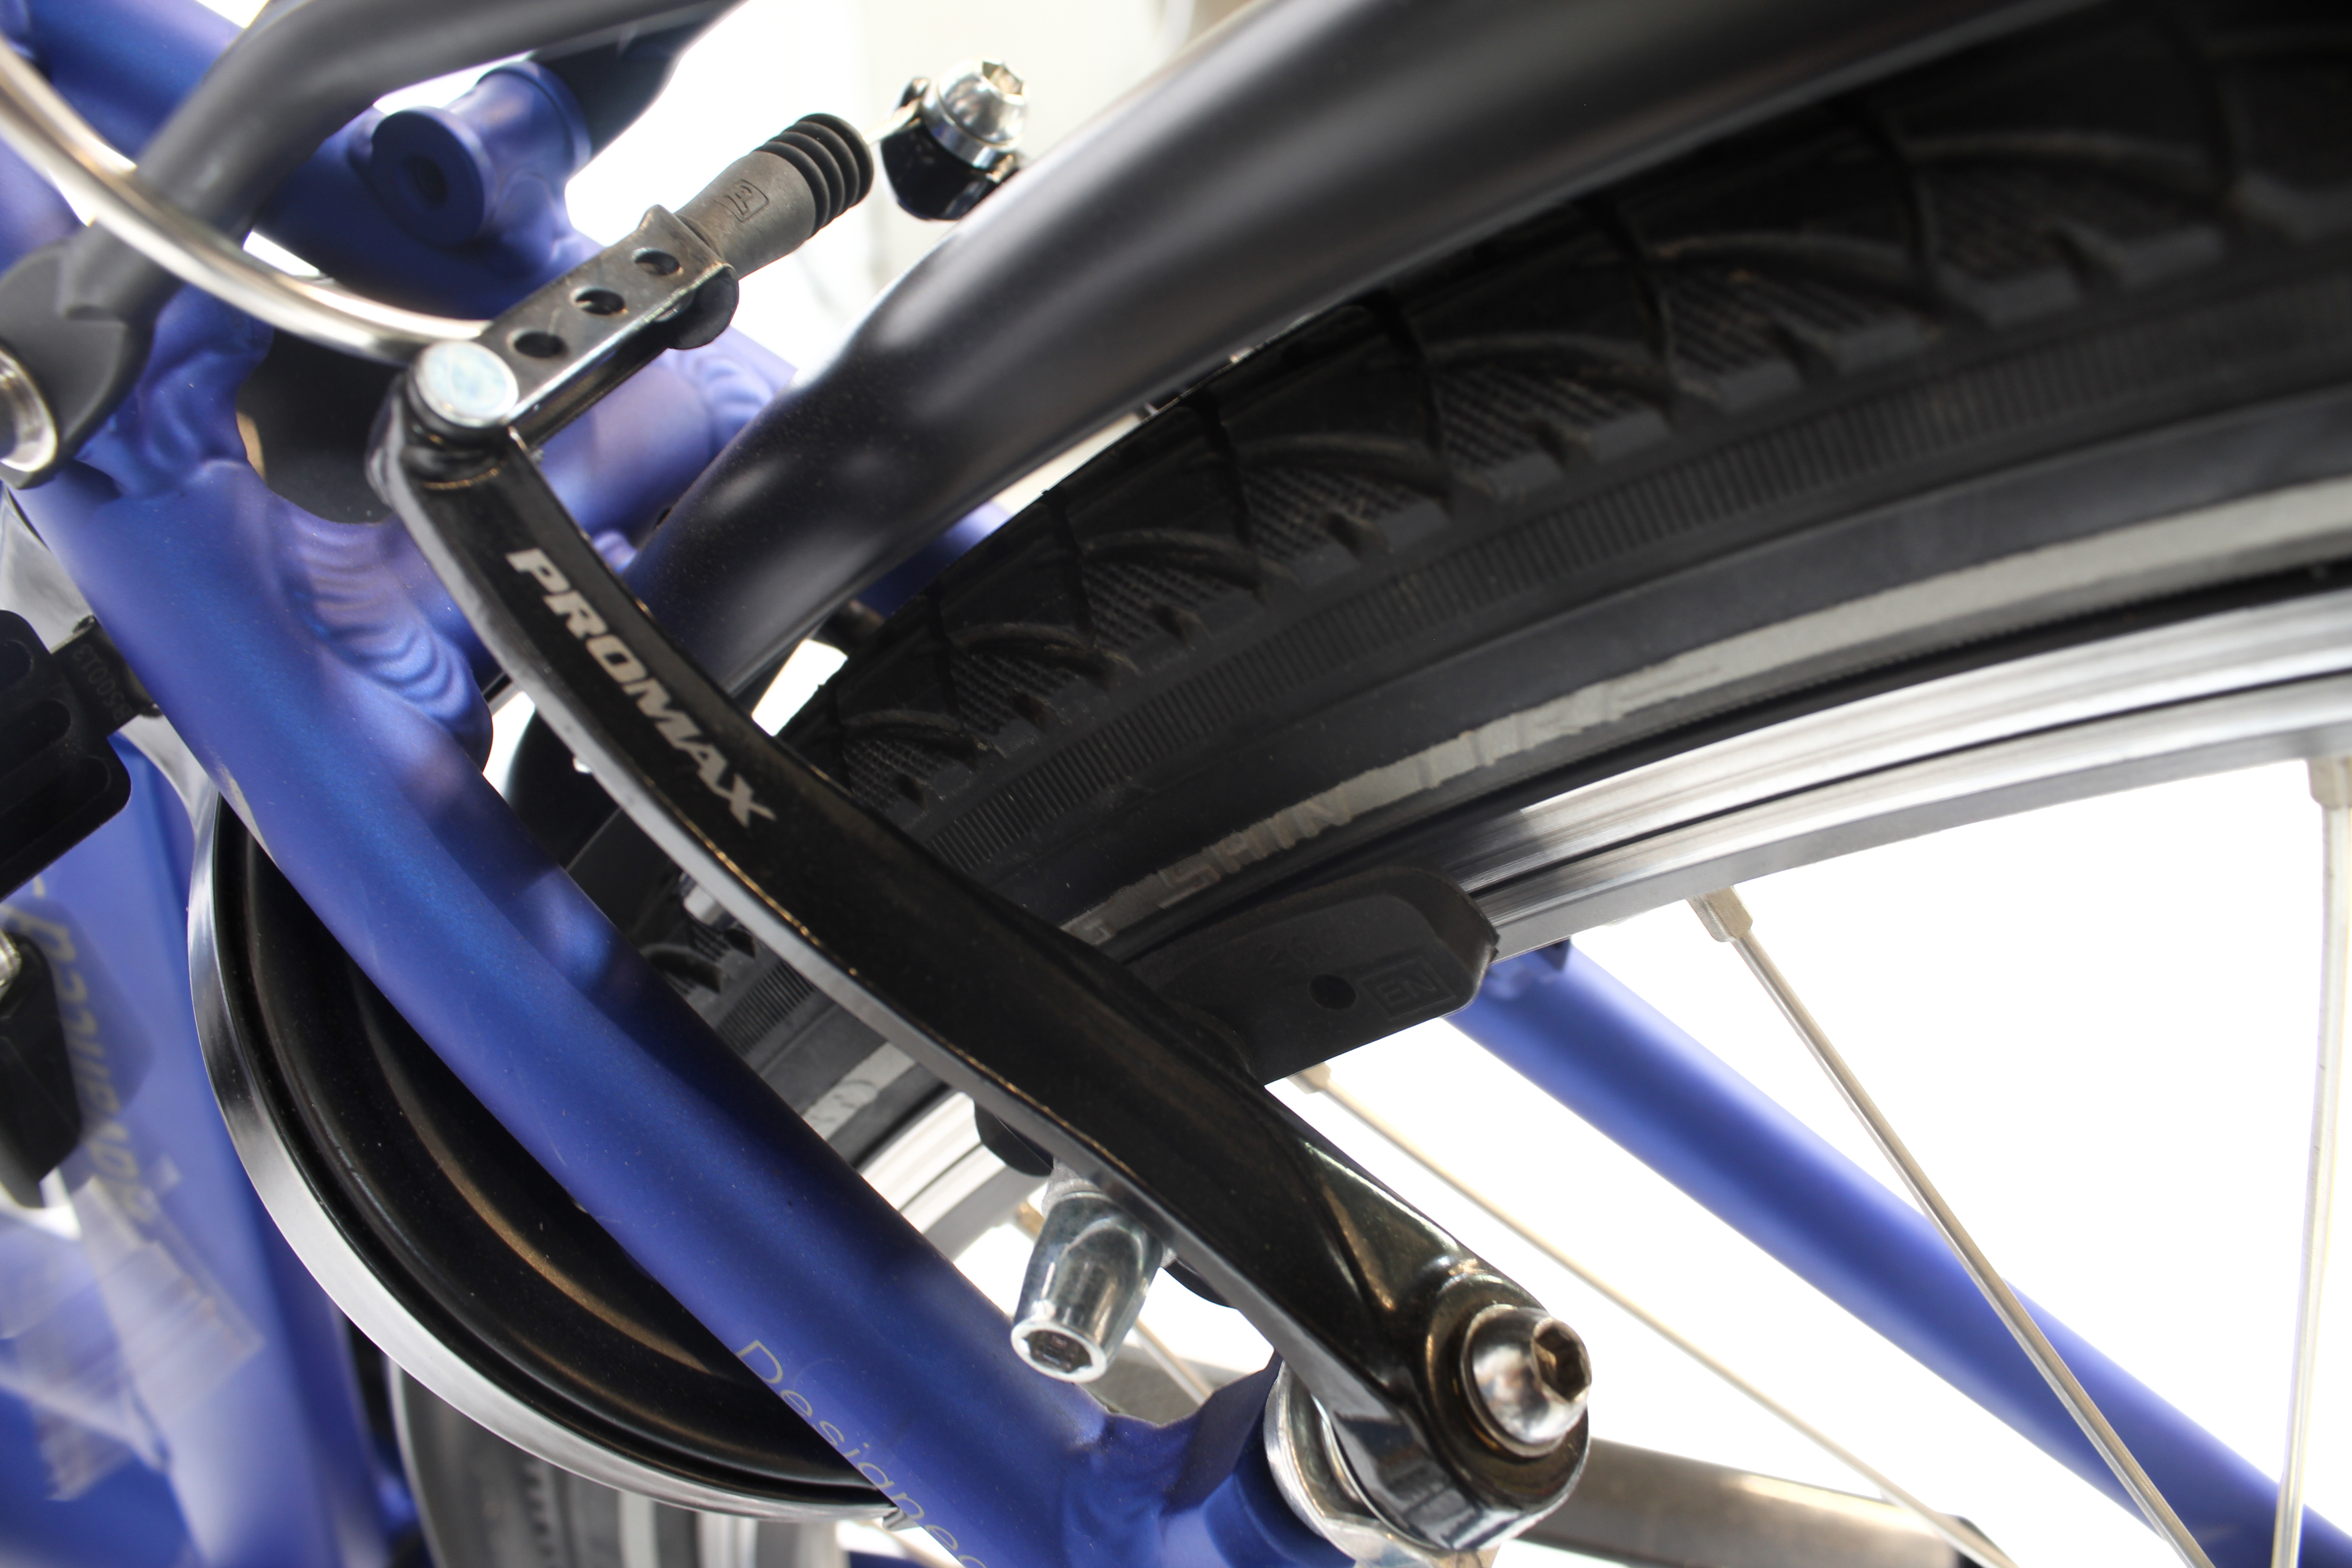 SAXONETTE Advanced Sport - E-Citybike B-Ware neuwertig Federgabel blau matt